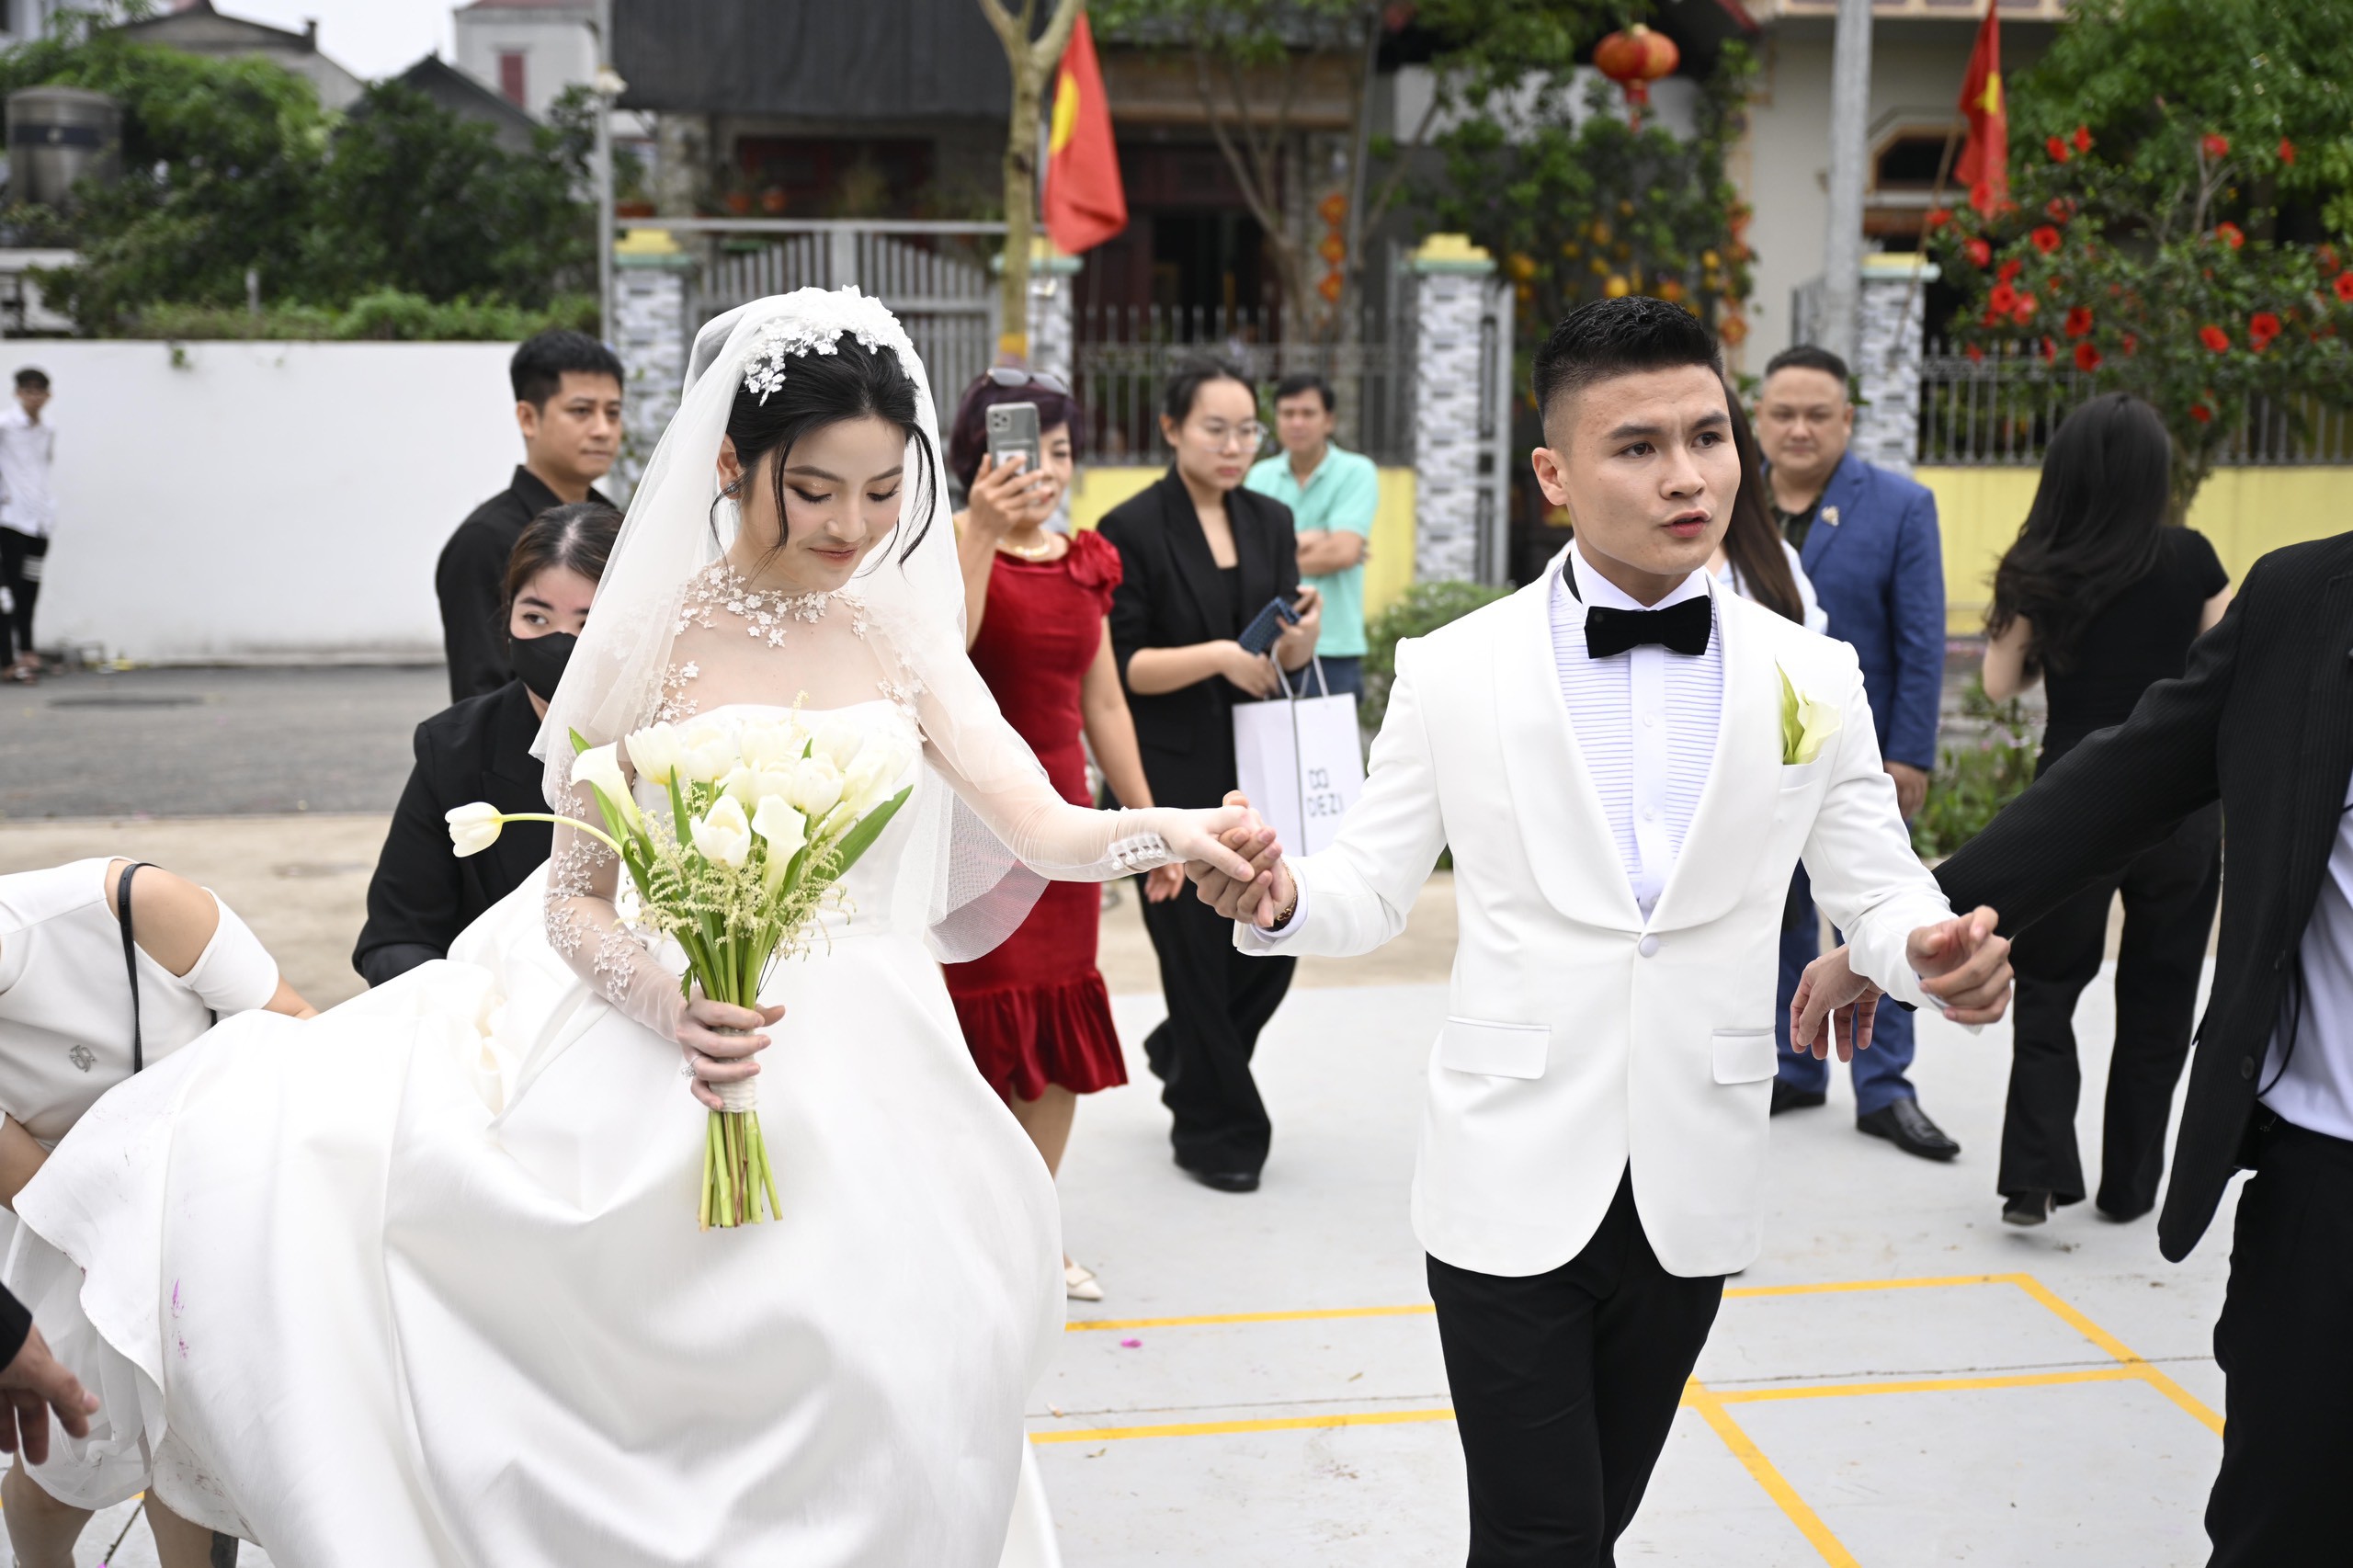 Khoảng 16h, cô dâu Chu Thanh Huyền và chú rể Quang Hải sánh bước bên nhau trong một trang phục cưới mới, cùng bước tới địa điểm tổ chức lễ cưới.